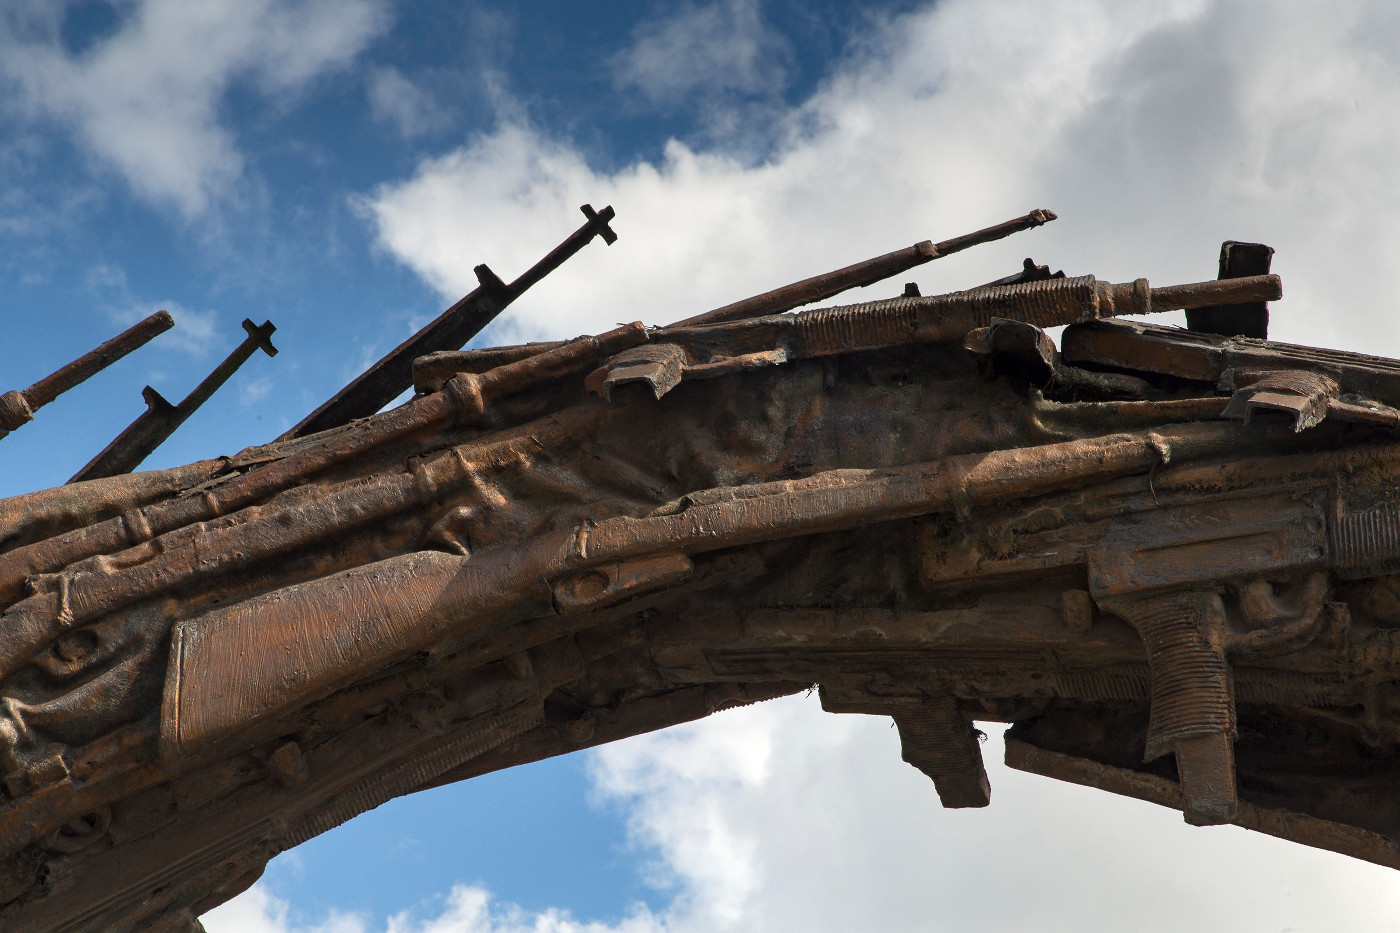 Für das Friedens-Denkmal „Schwerter zu Pflugscharen“ des Bildhauers Rodrigo Arenas Betancur haben die ehemaligen Guerilla-Kämpfer der M-19 in den 90er Jahren ihre Waffen abgegeben, die dann eingeschmolzen wurden. Das Kunstwerk steht in der kolumbianischen Stadt Pasto. Foto: Adveniat/Jürgen Escher